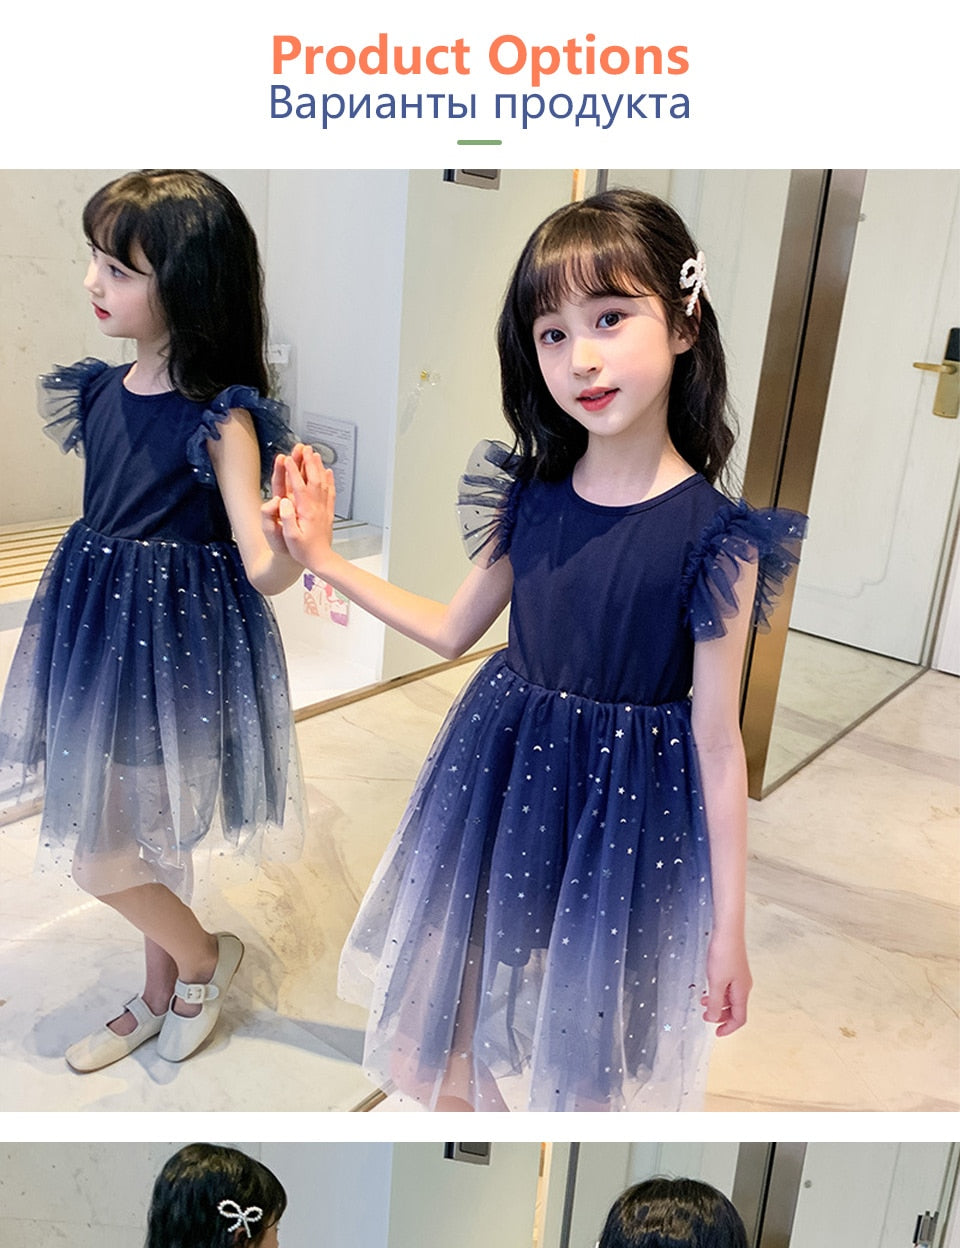 Kids Girl Summer Princess Star Sleeveless Party Dress - KGD8330